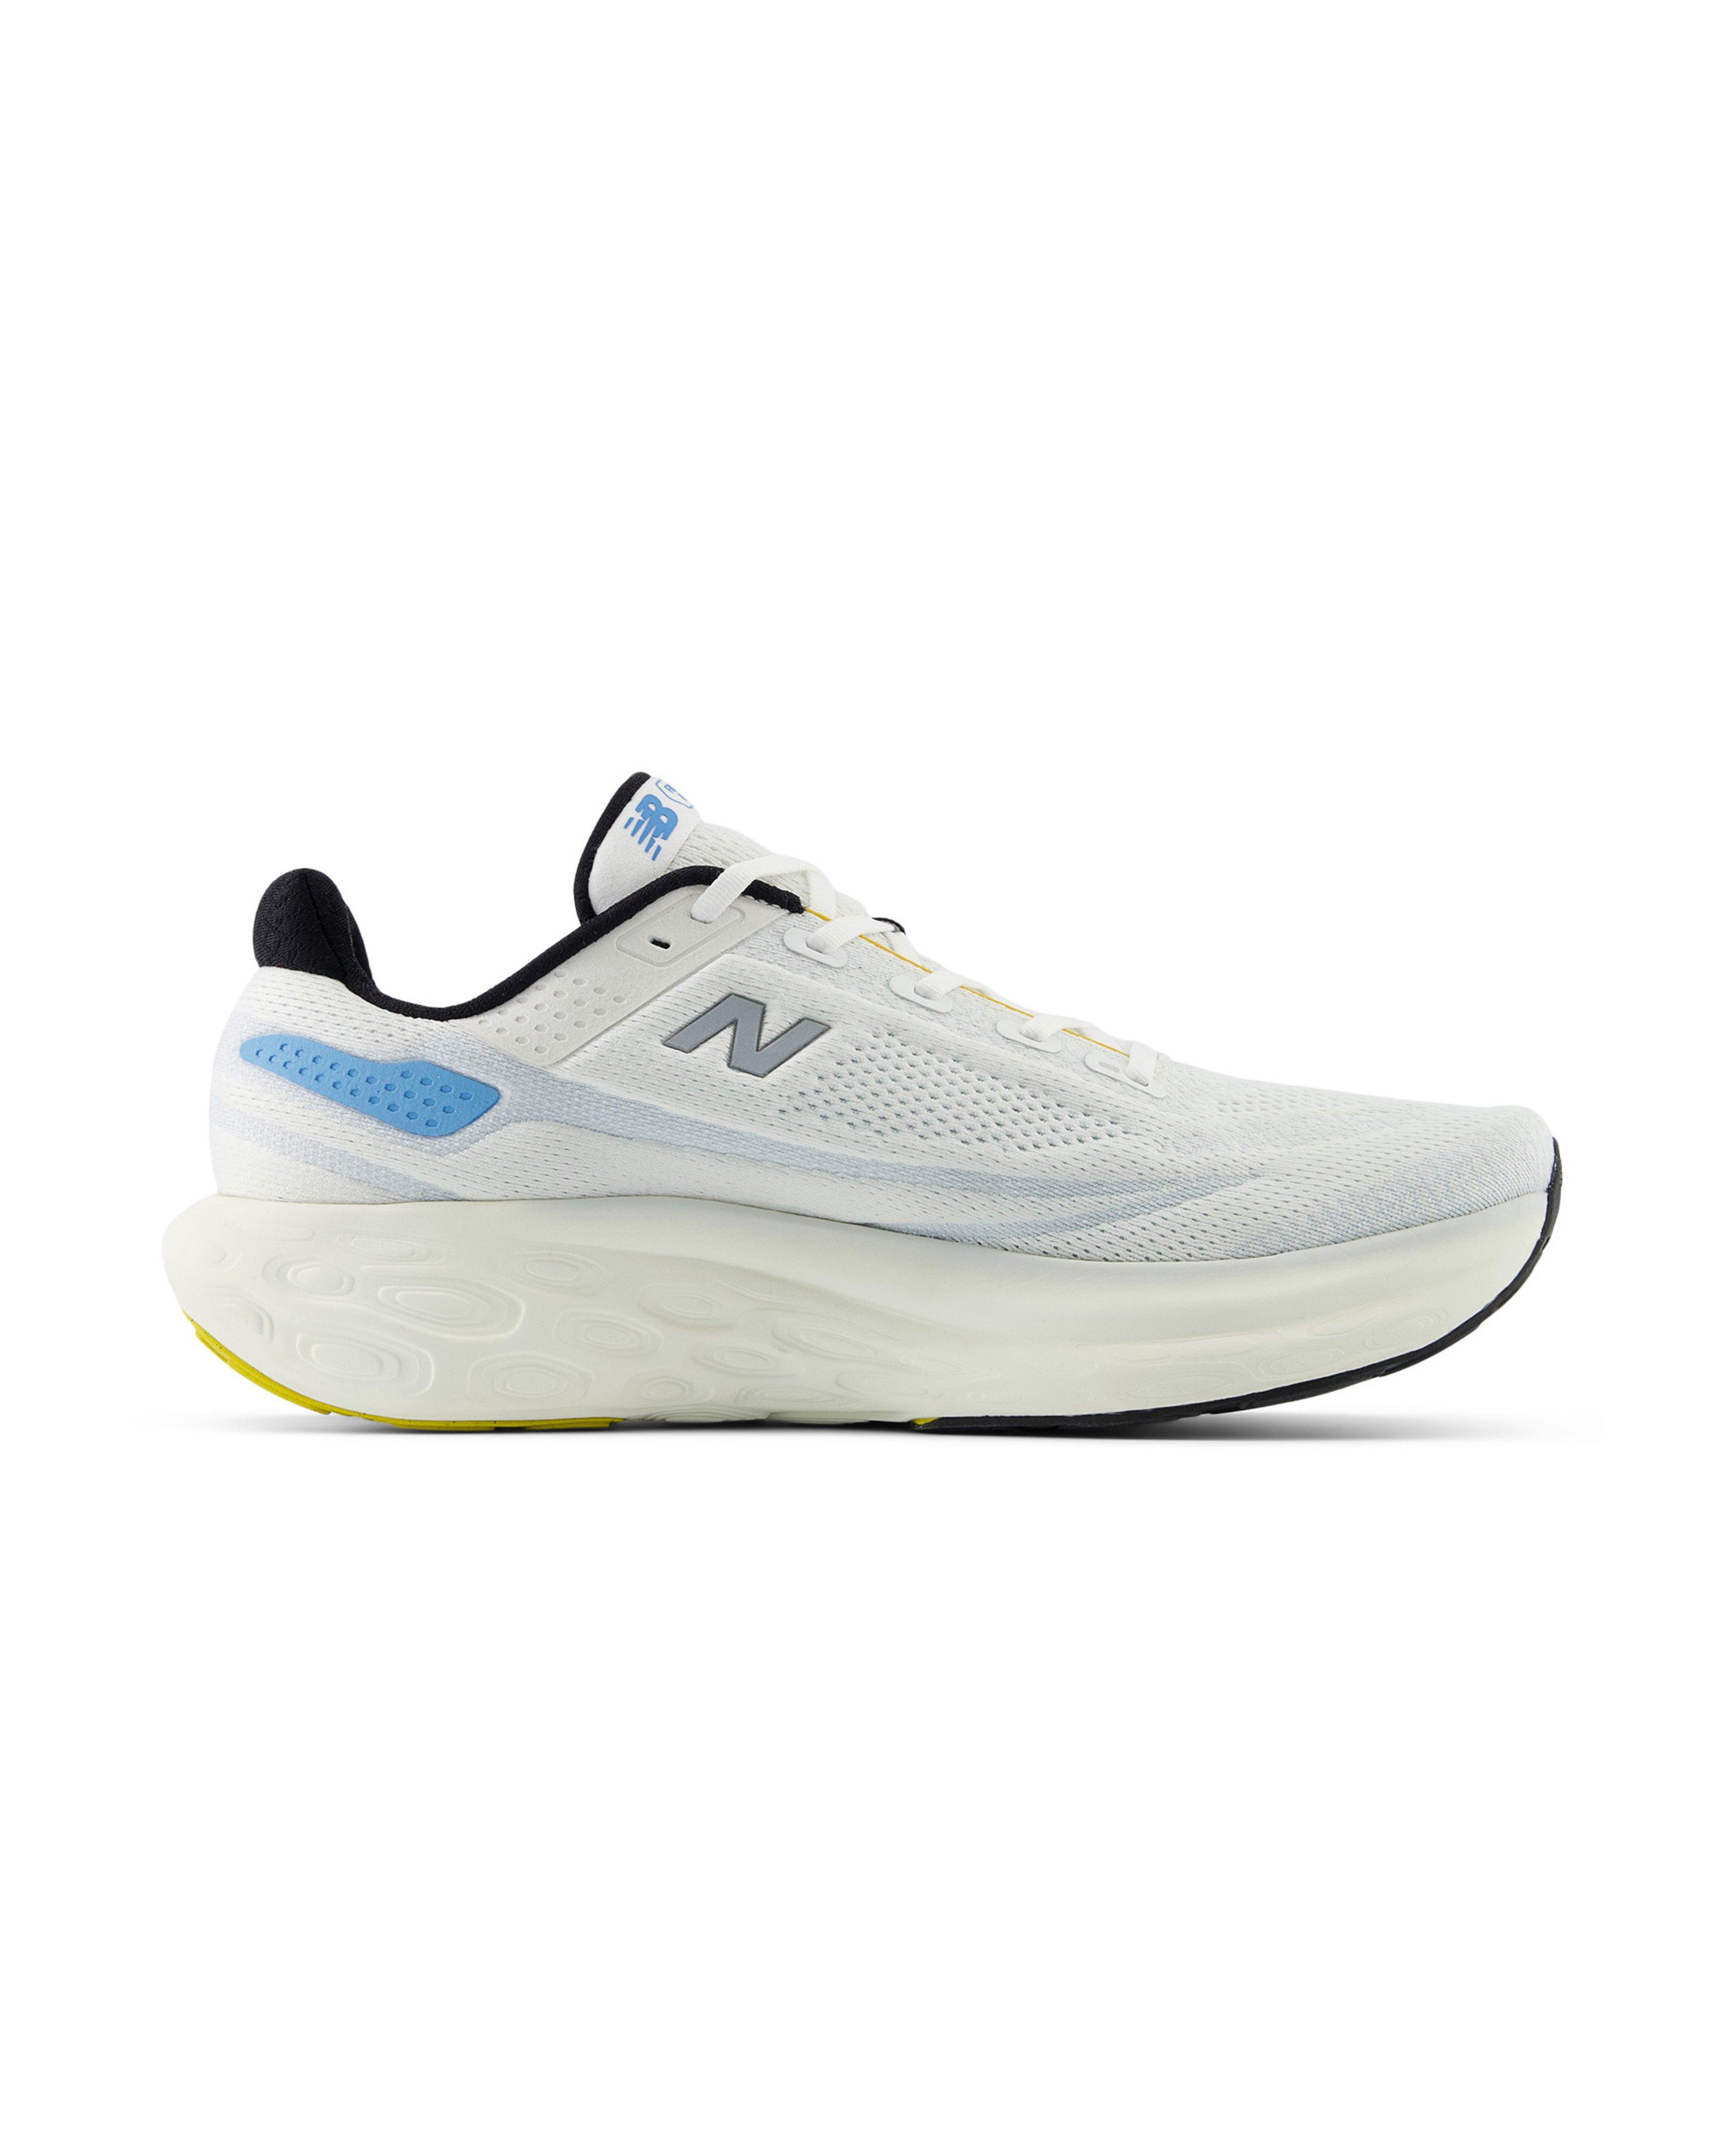 New Balance Men’s Fresh Foam X 1080 v13 Road Running Shoes  -  White